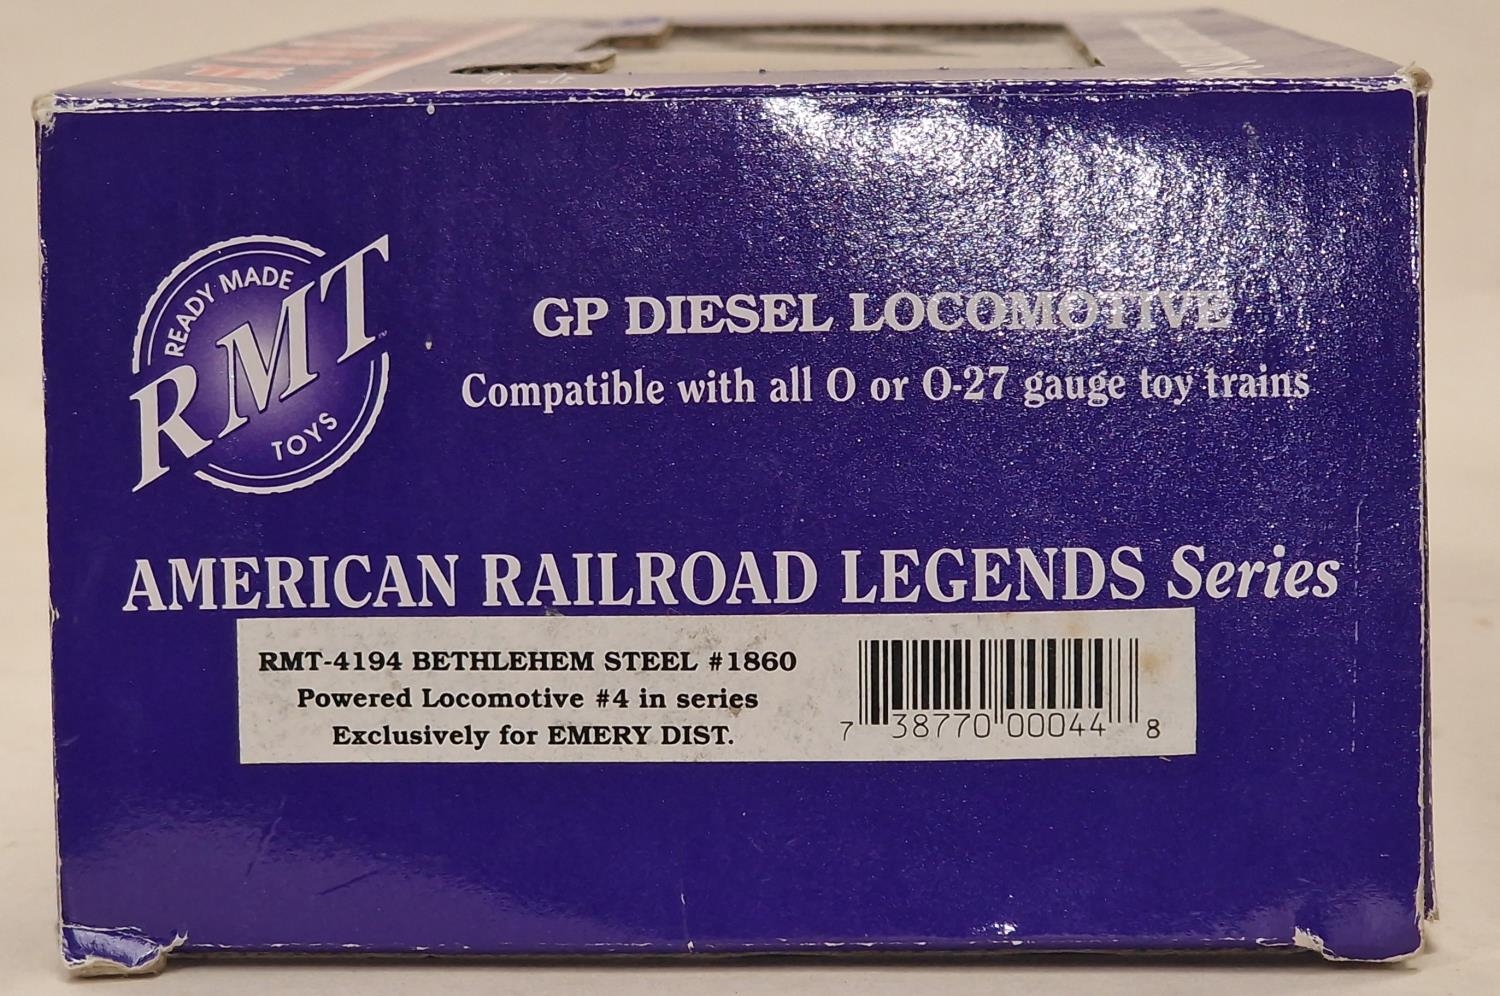 RMT 4191 "Bethlehem Steele 1860 " O gauge Diesel Locomotive appears unused in box - Image 2 of 2